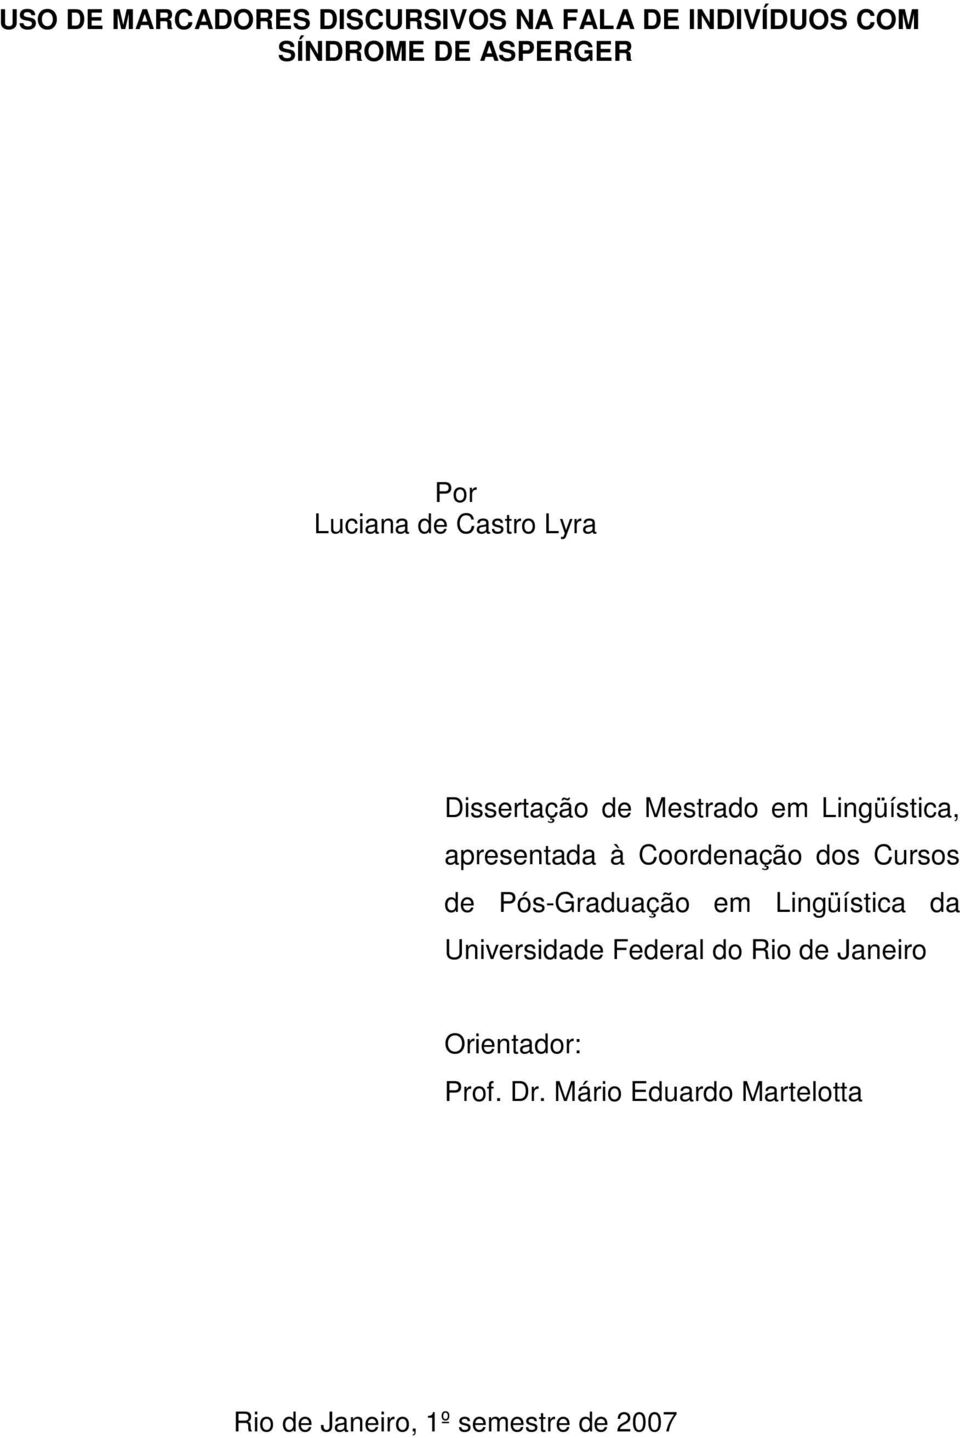 Coordenação dos Cursos de Pós-Graduação em Lingüística da Universidade Federal do